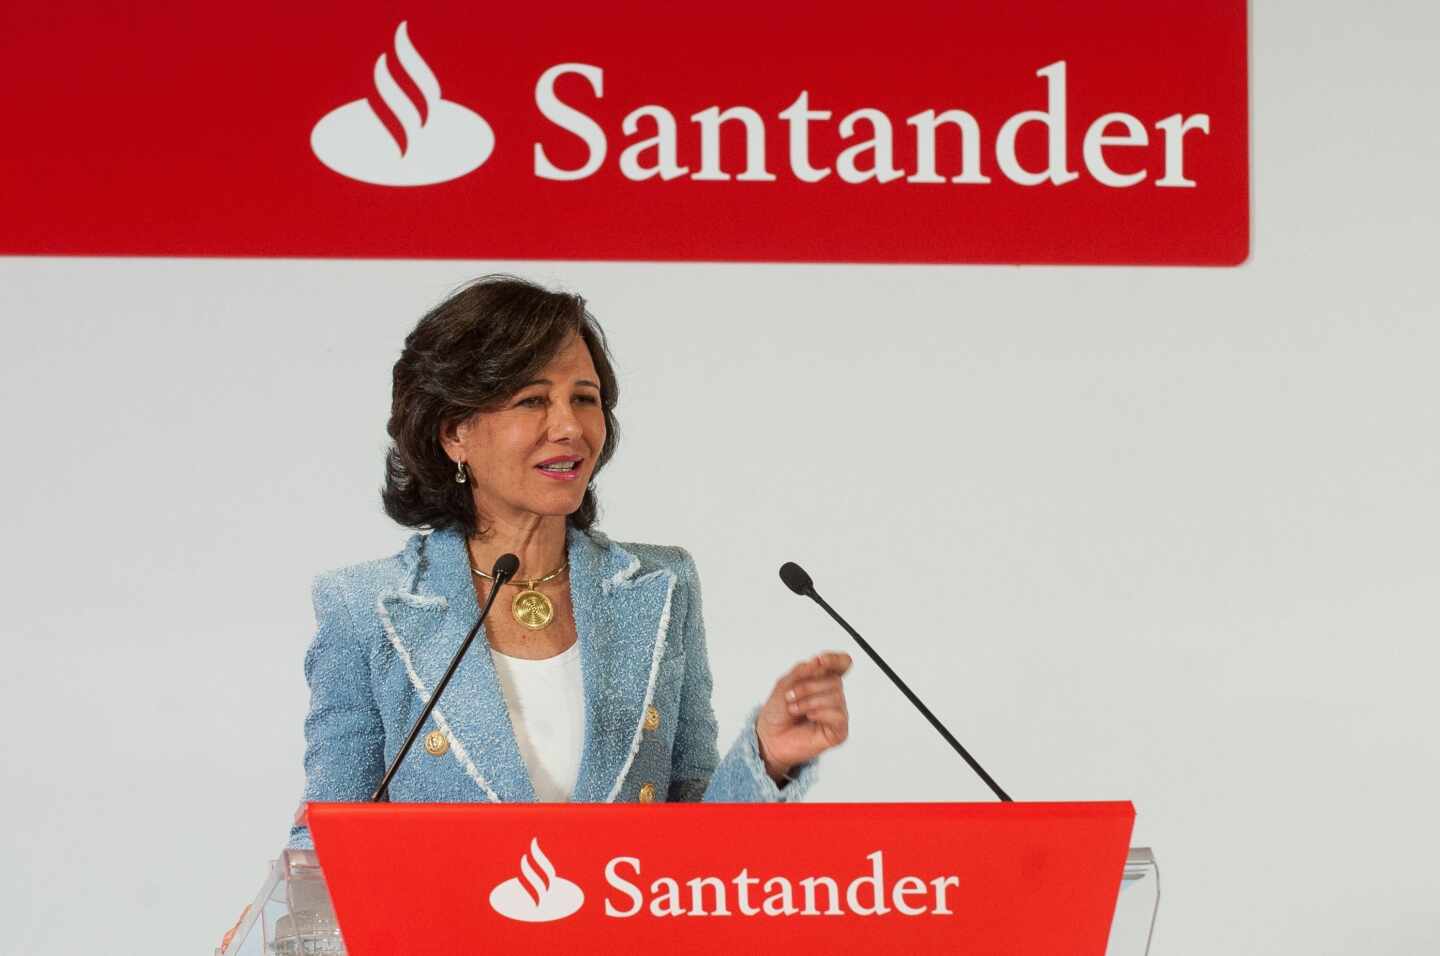 El juez reduce de 68 a 51 millones la indemnización que dictó del Santander a Orcel